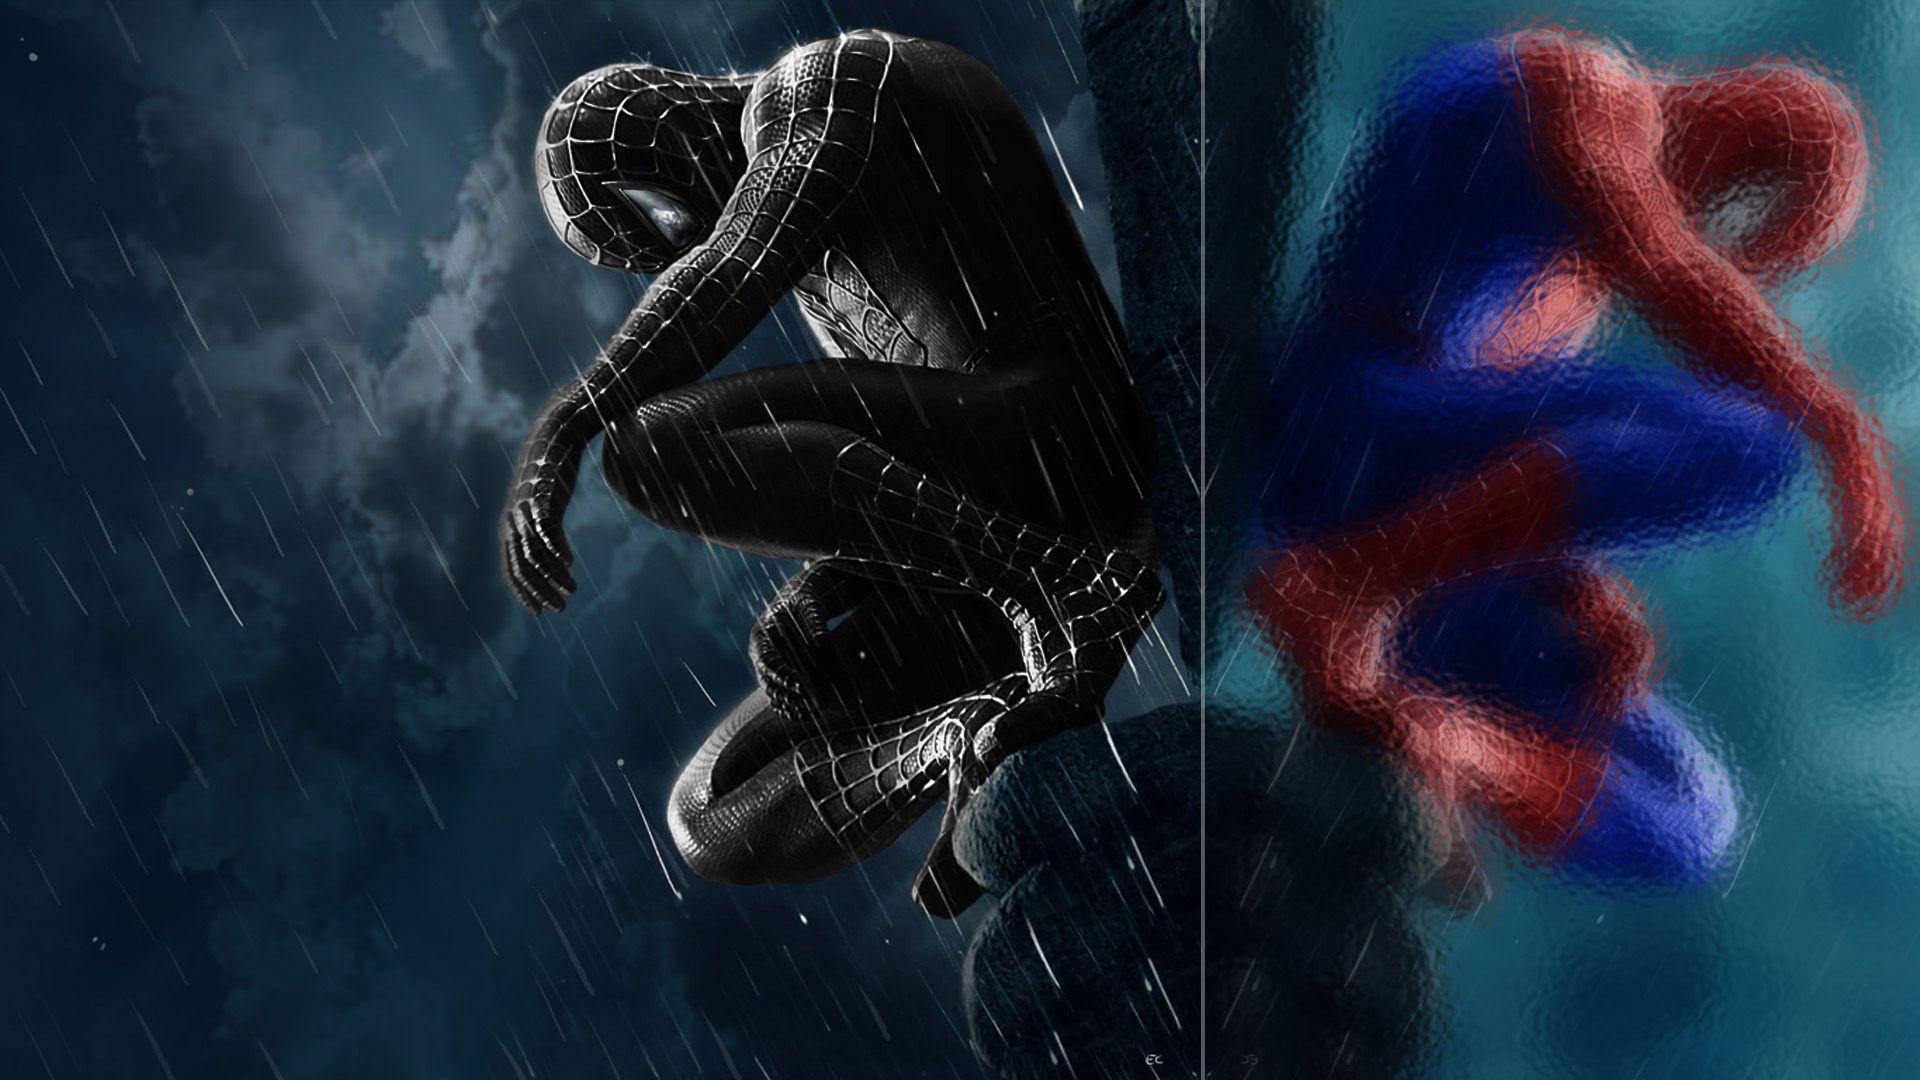 Originaletx Svarta Spiderman Wallpaper